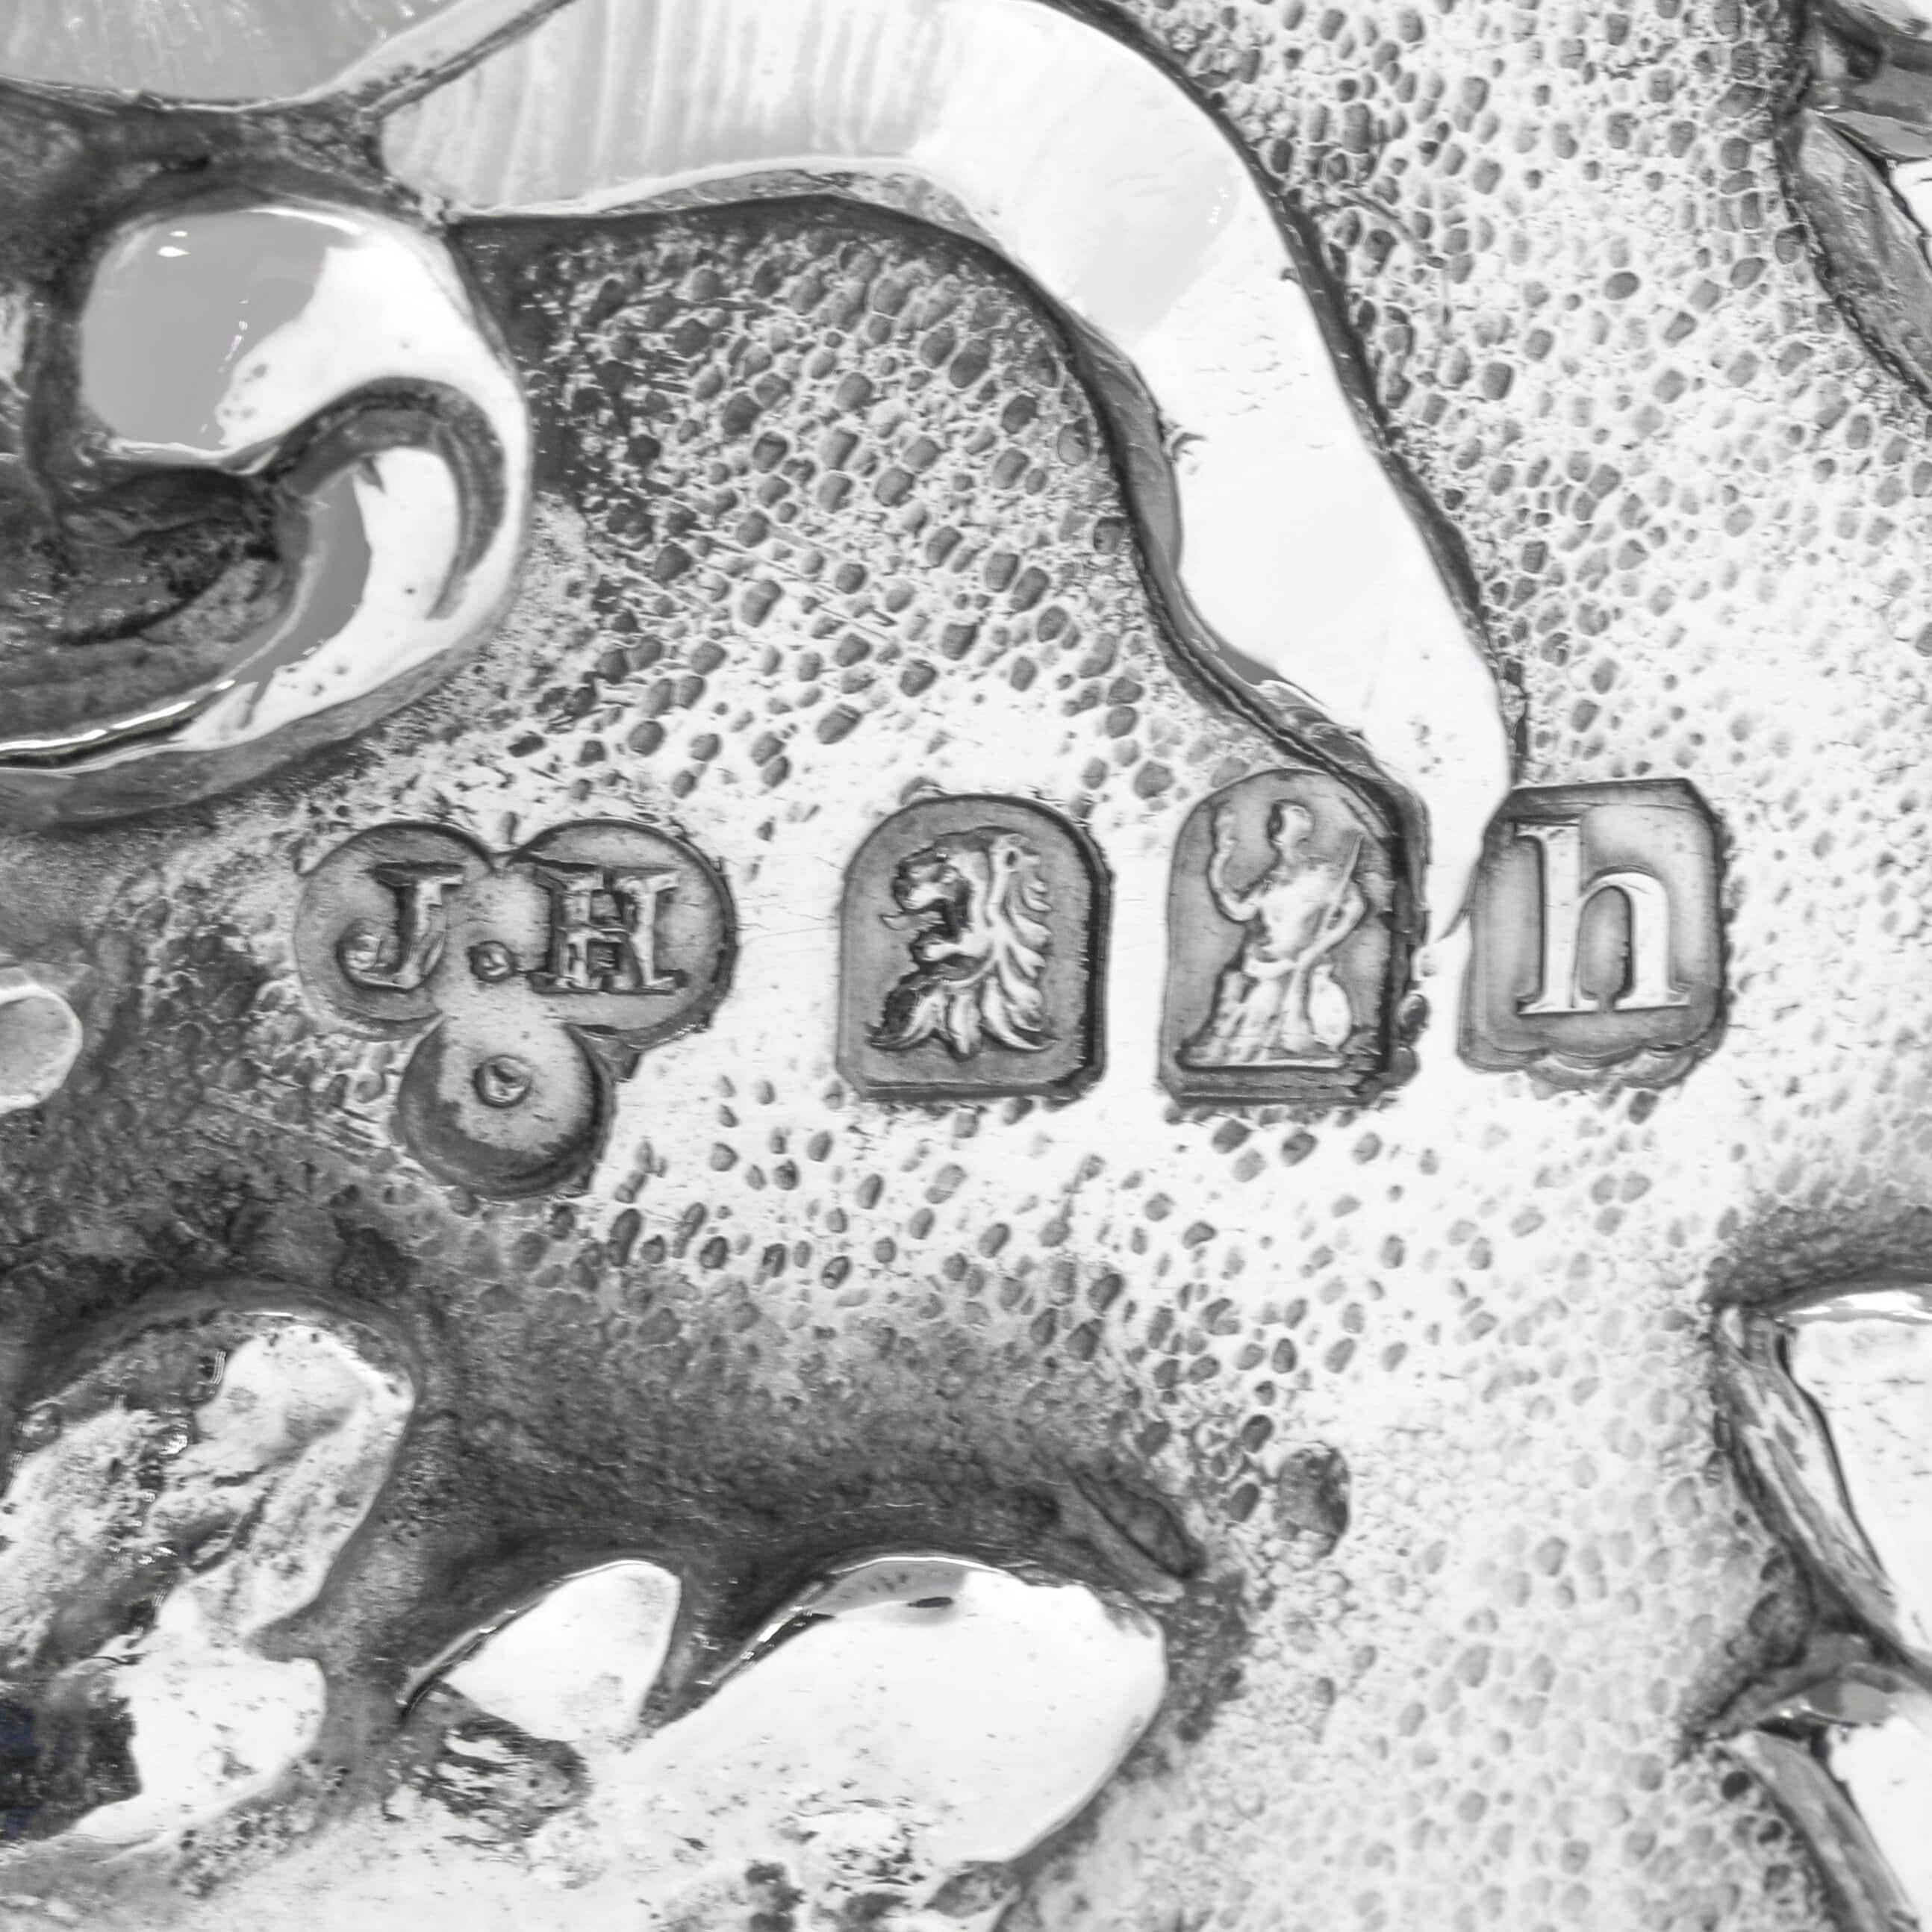 Diese unglaubliche, edwardianische, antike Britannia Standard Silberschale wurde 1903 in London von Joseph Heming gepunzt. Sie ist wunderschön ziseliert mit Akanthus- und Blumendetails und auffälligen Löwenmasken-Tropfenringgriffen. 

Die Schale